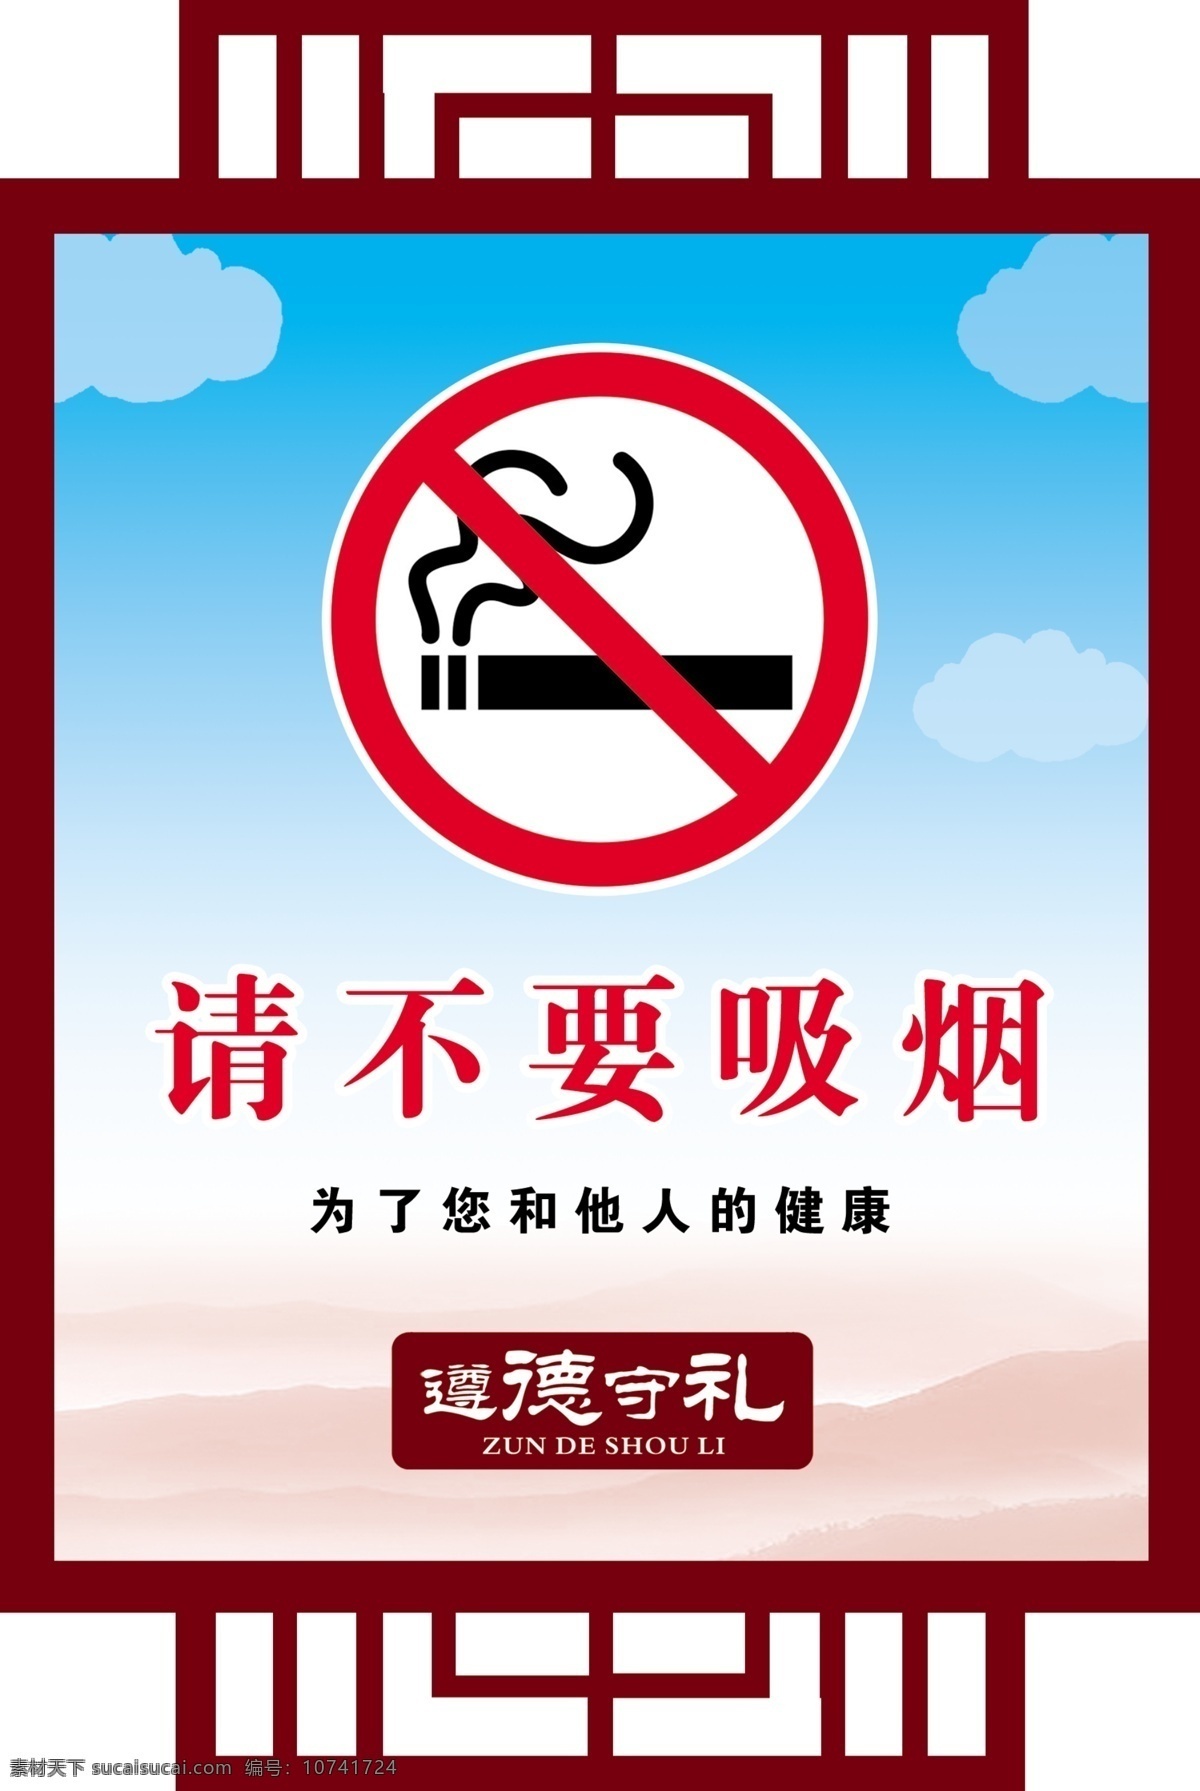 请不要吸烟 为了他人健康 禁止吸烟标志 遵德守礼 仿古边框 分层